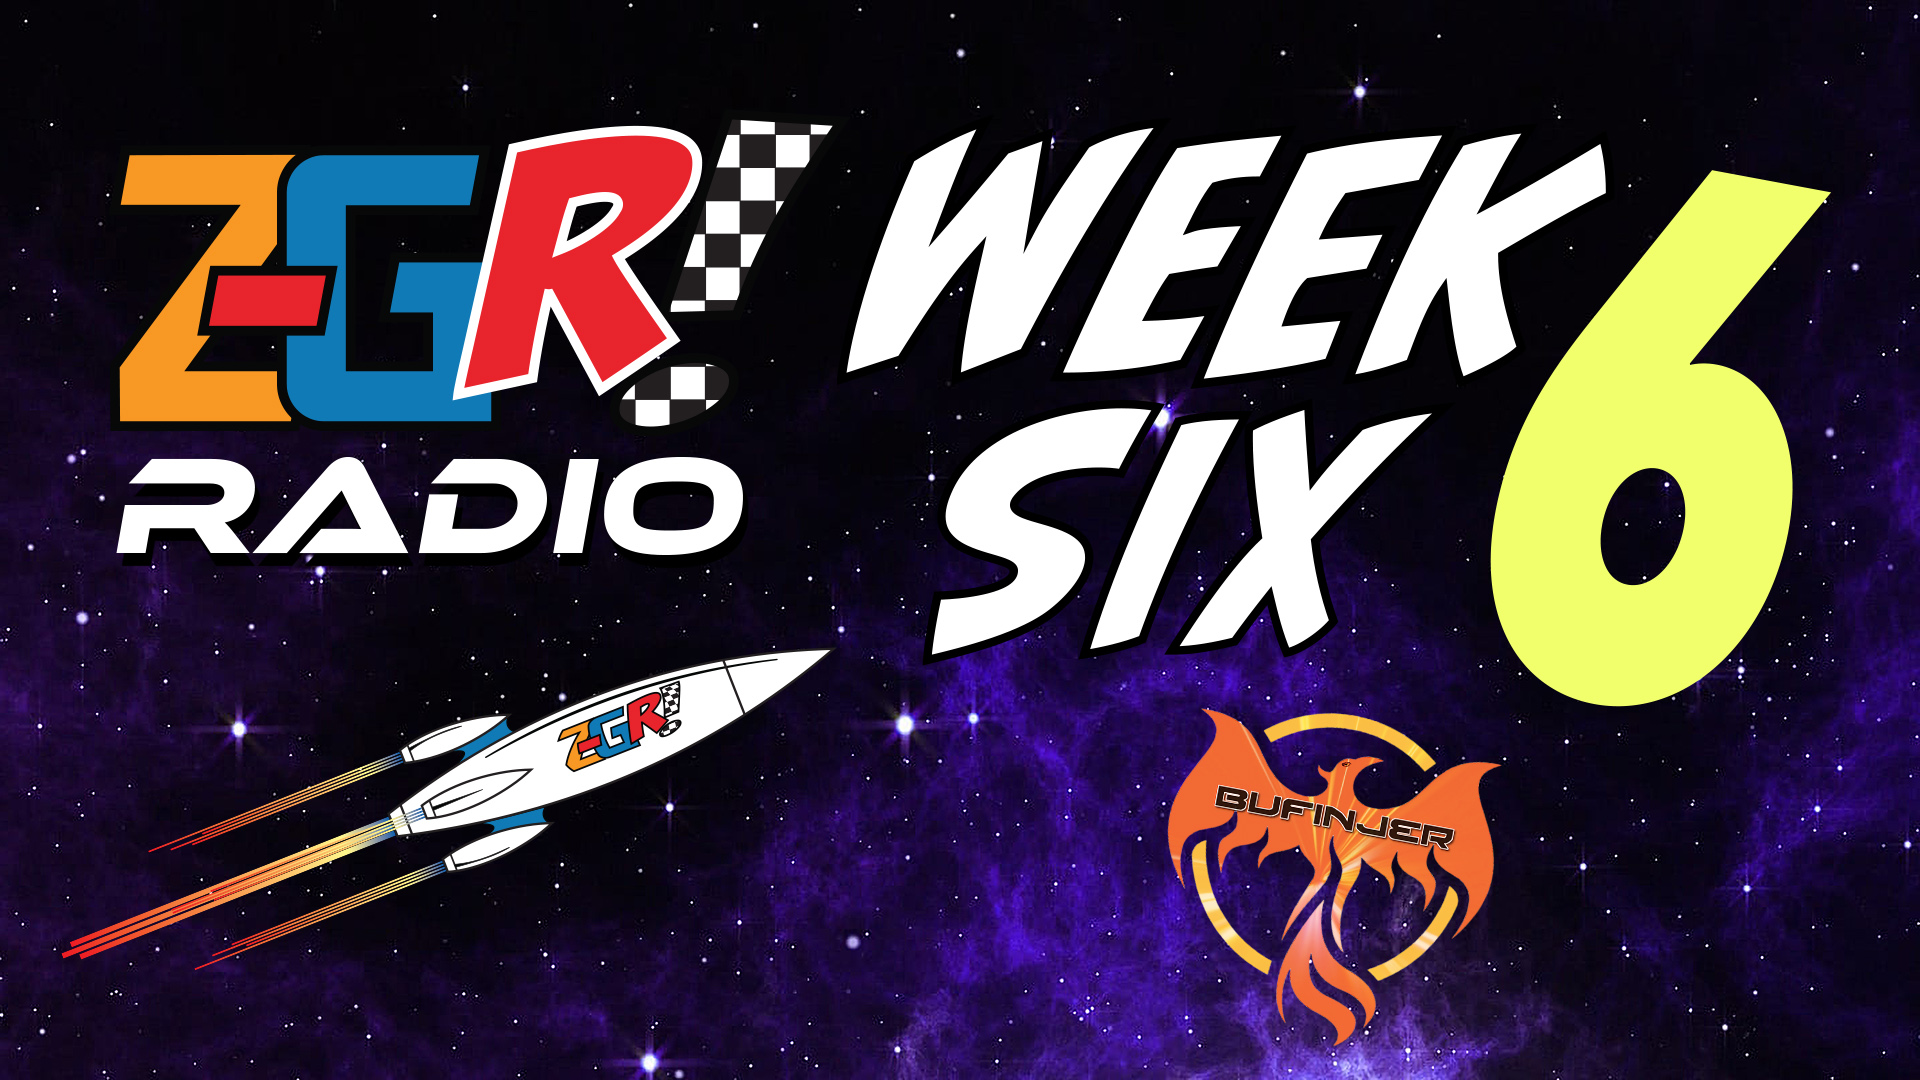 Z-GR! Radio Week Six Wrap-up